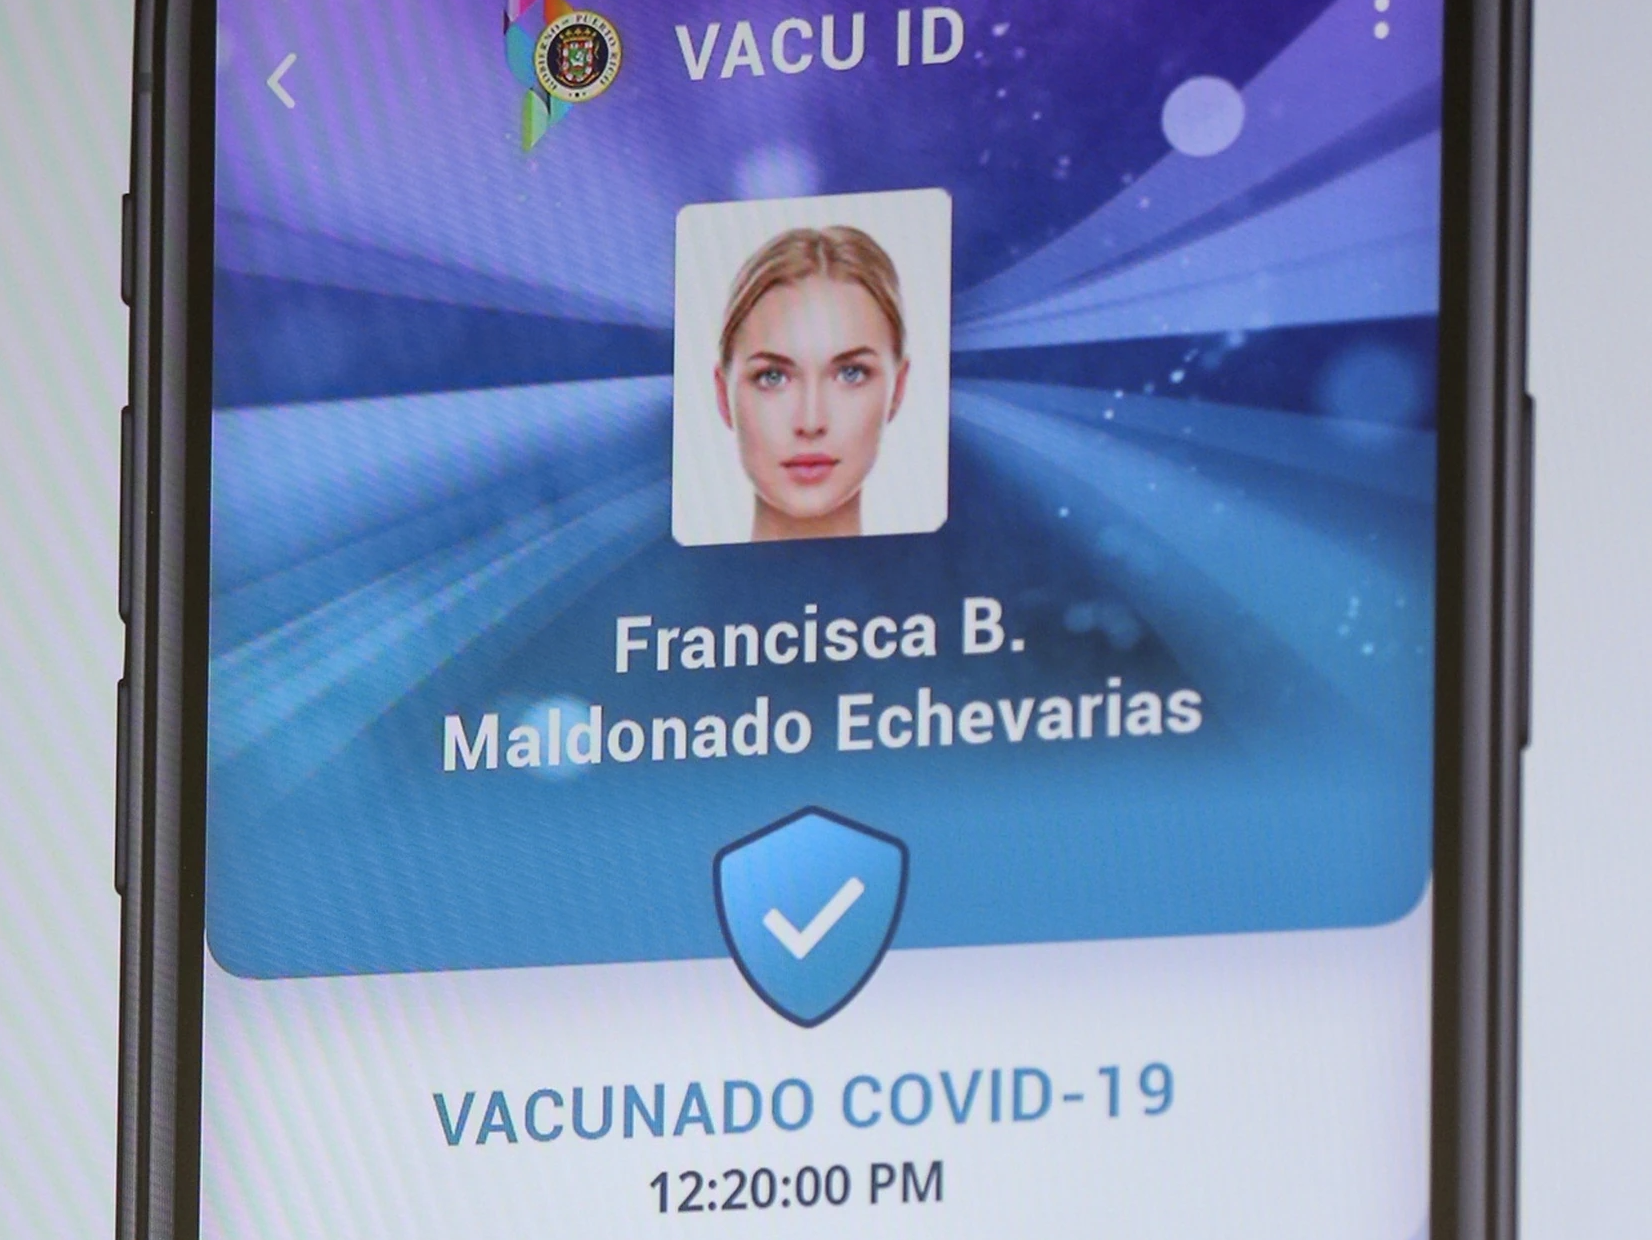 Vacu ID ya permite incluir a familiares en una misma cuenta